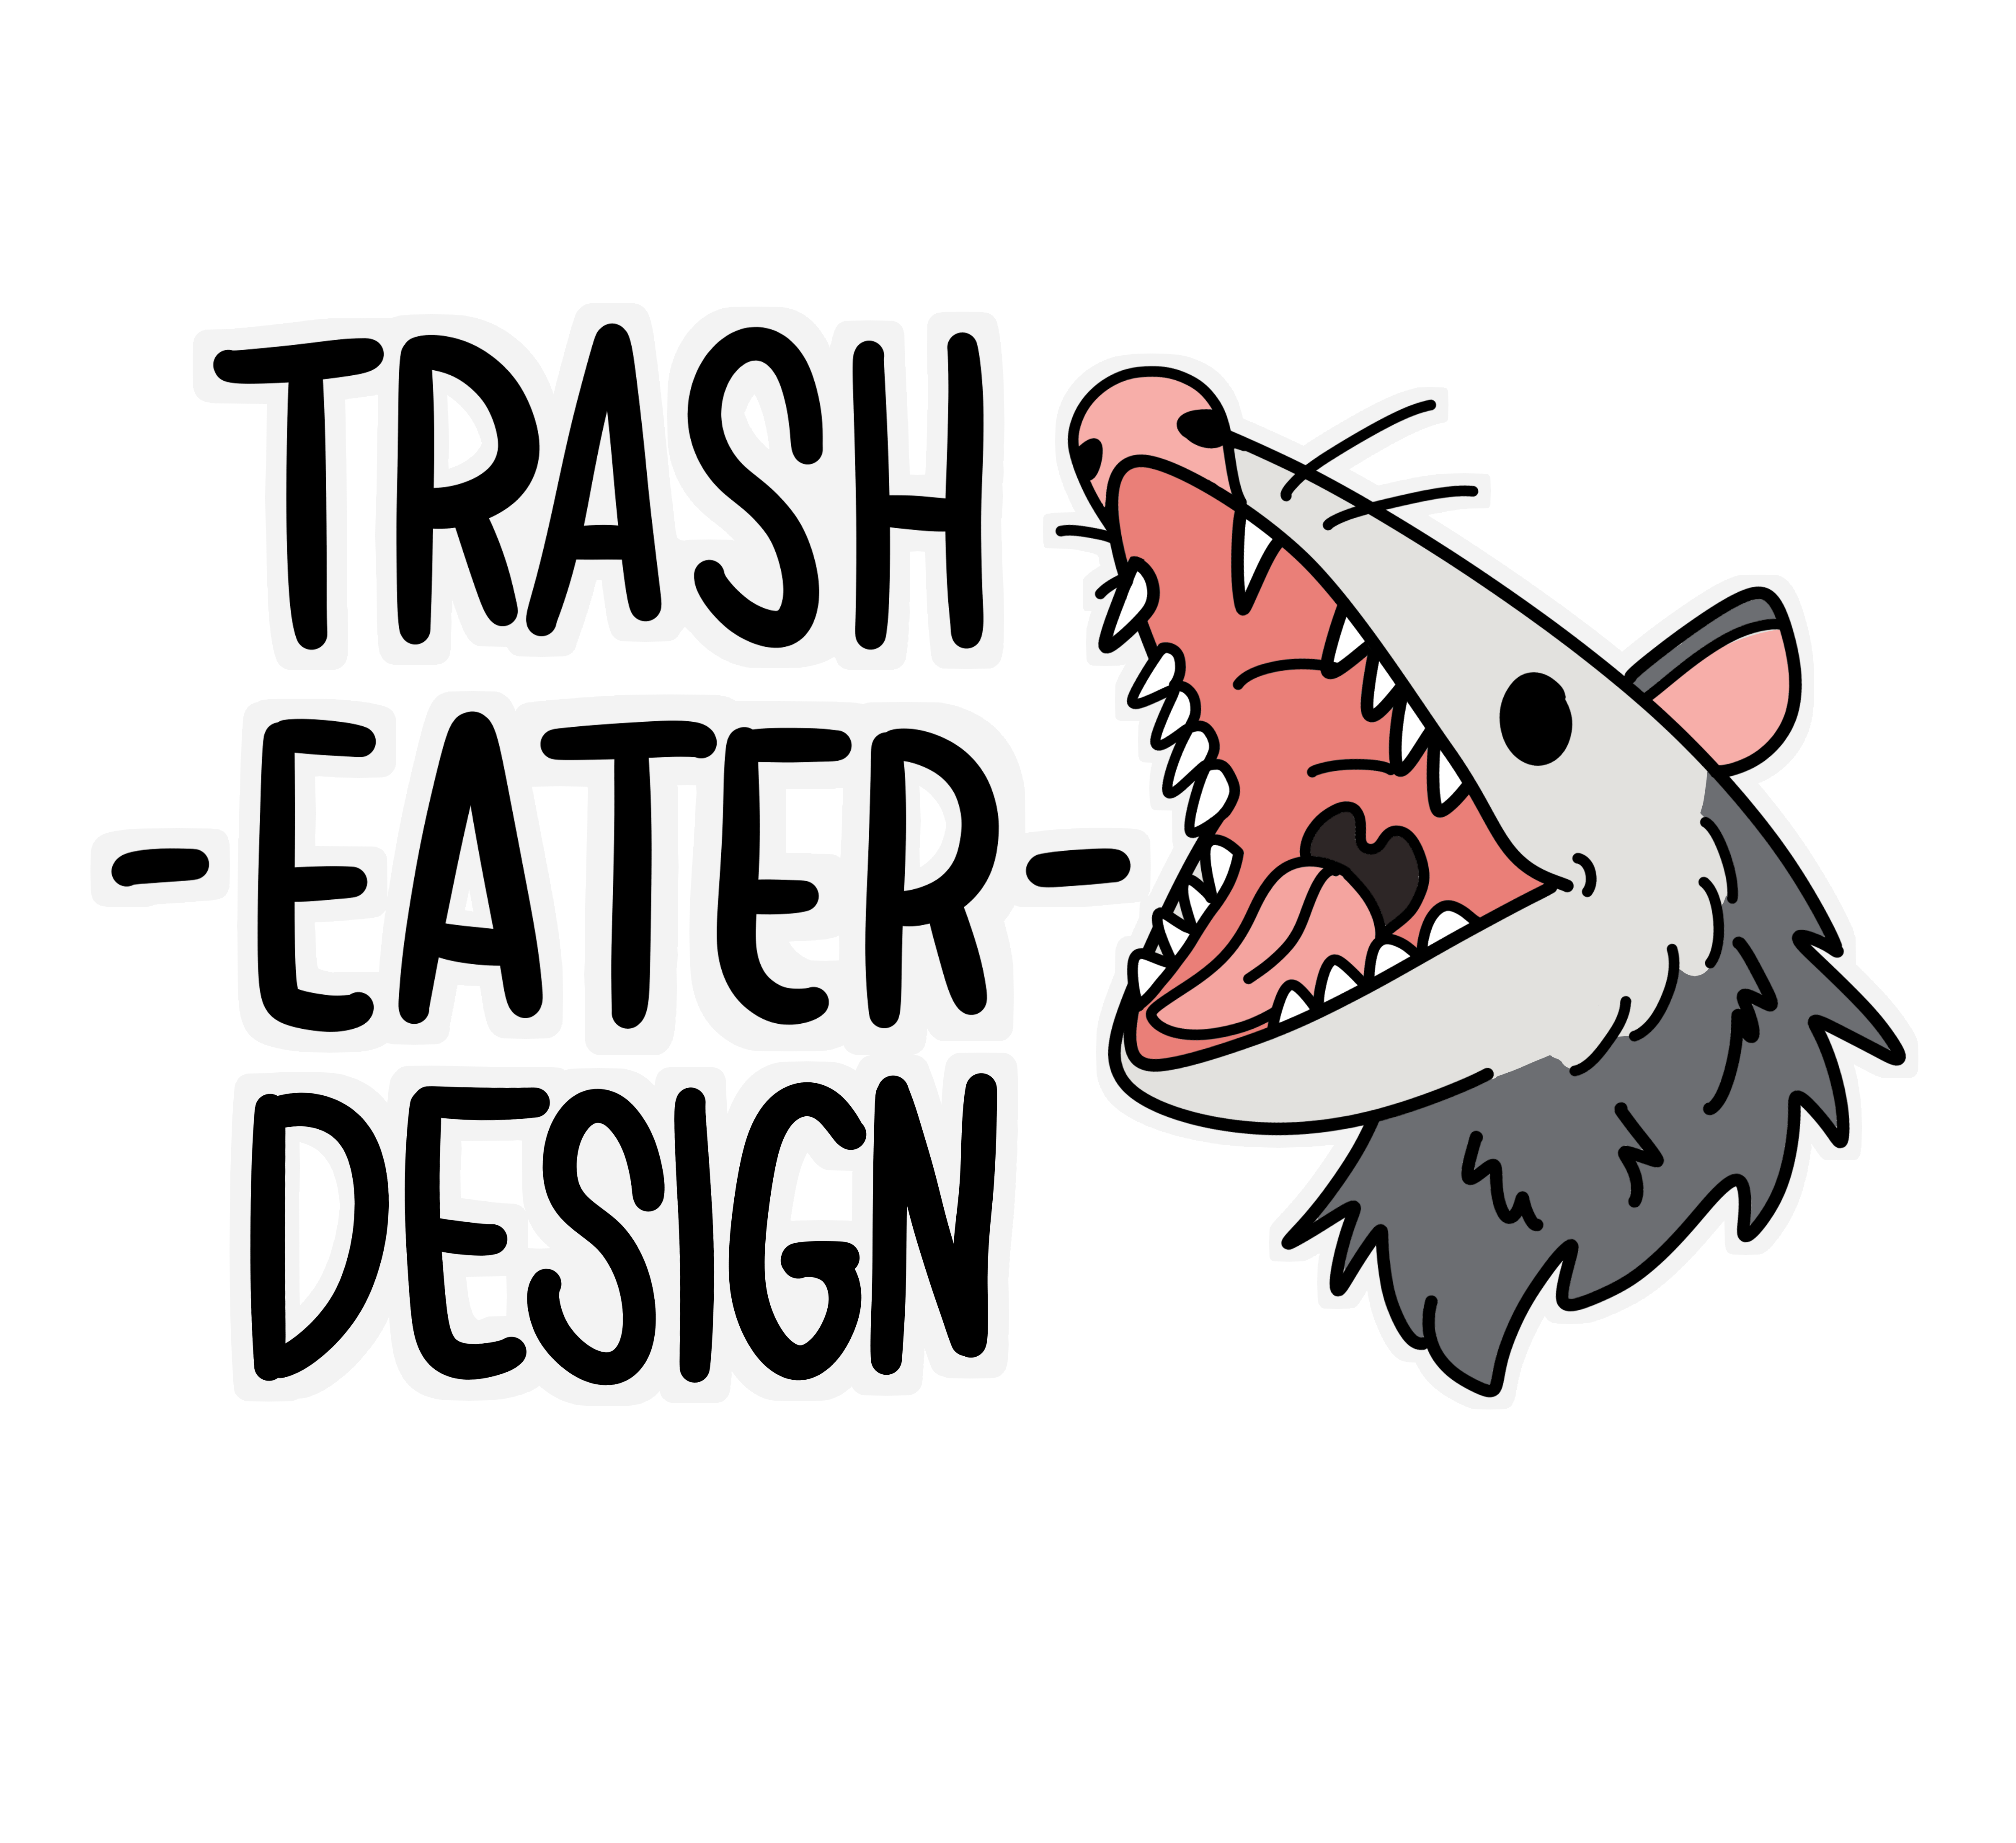 Trash Eater Design